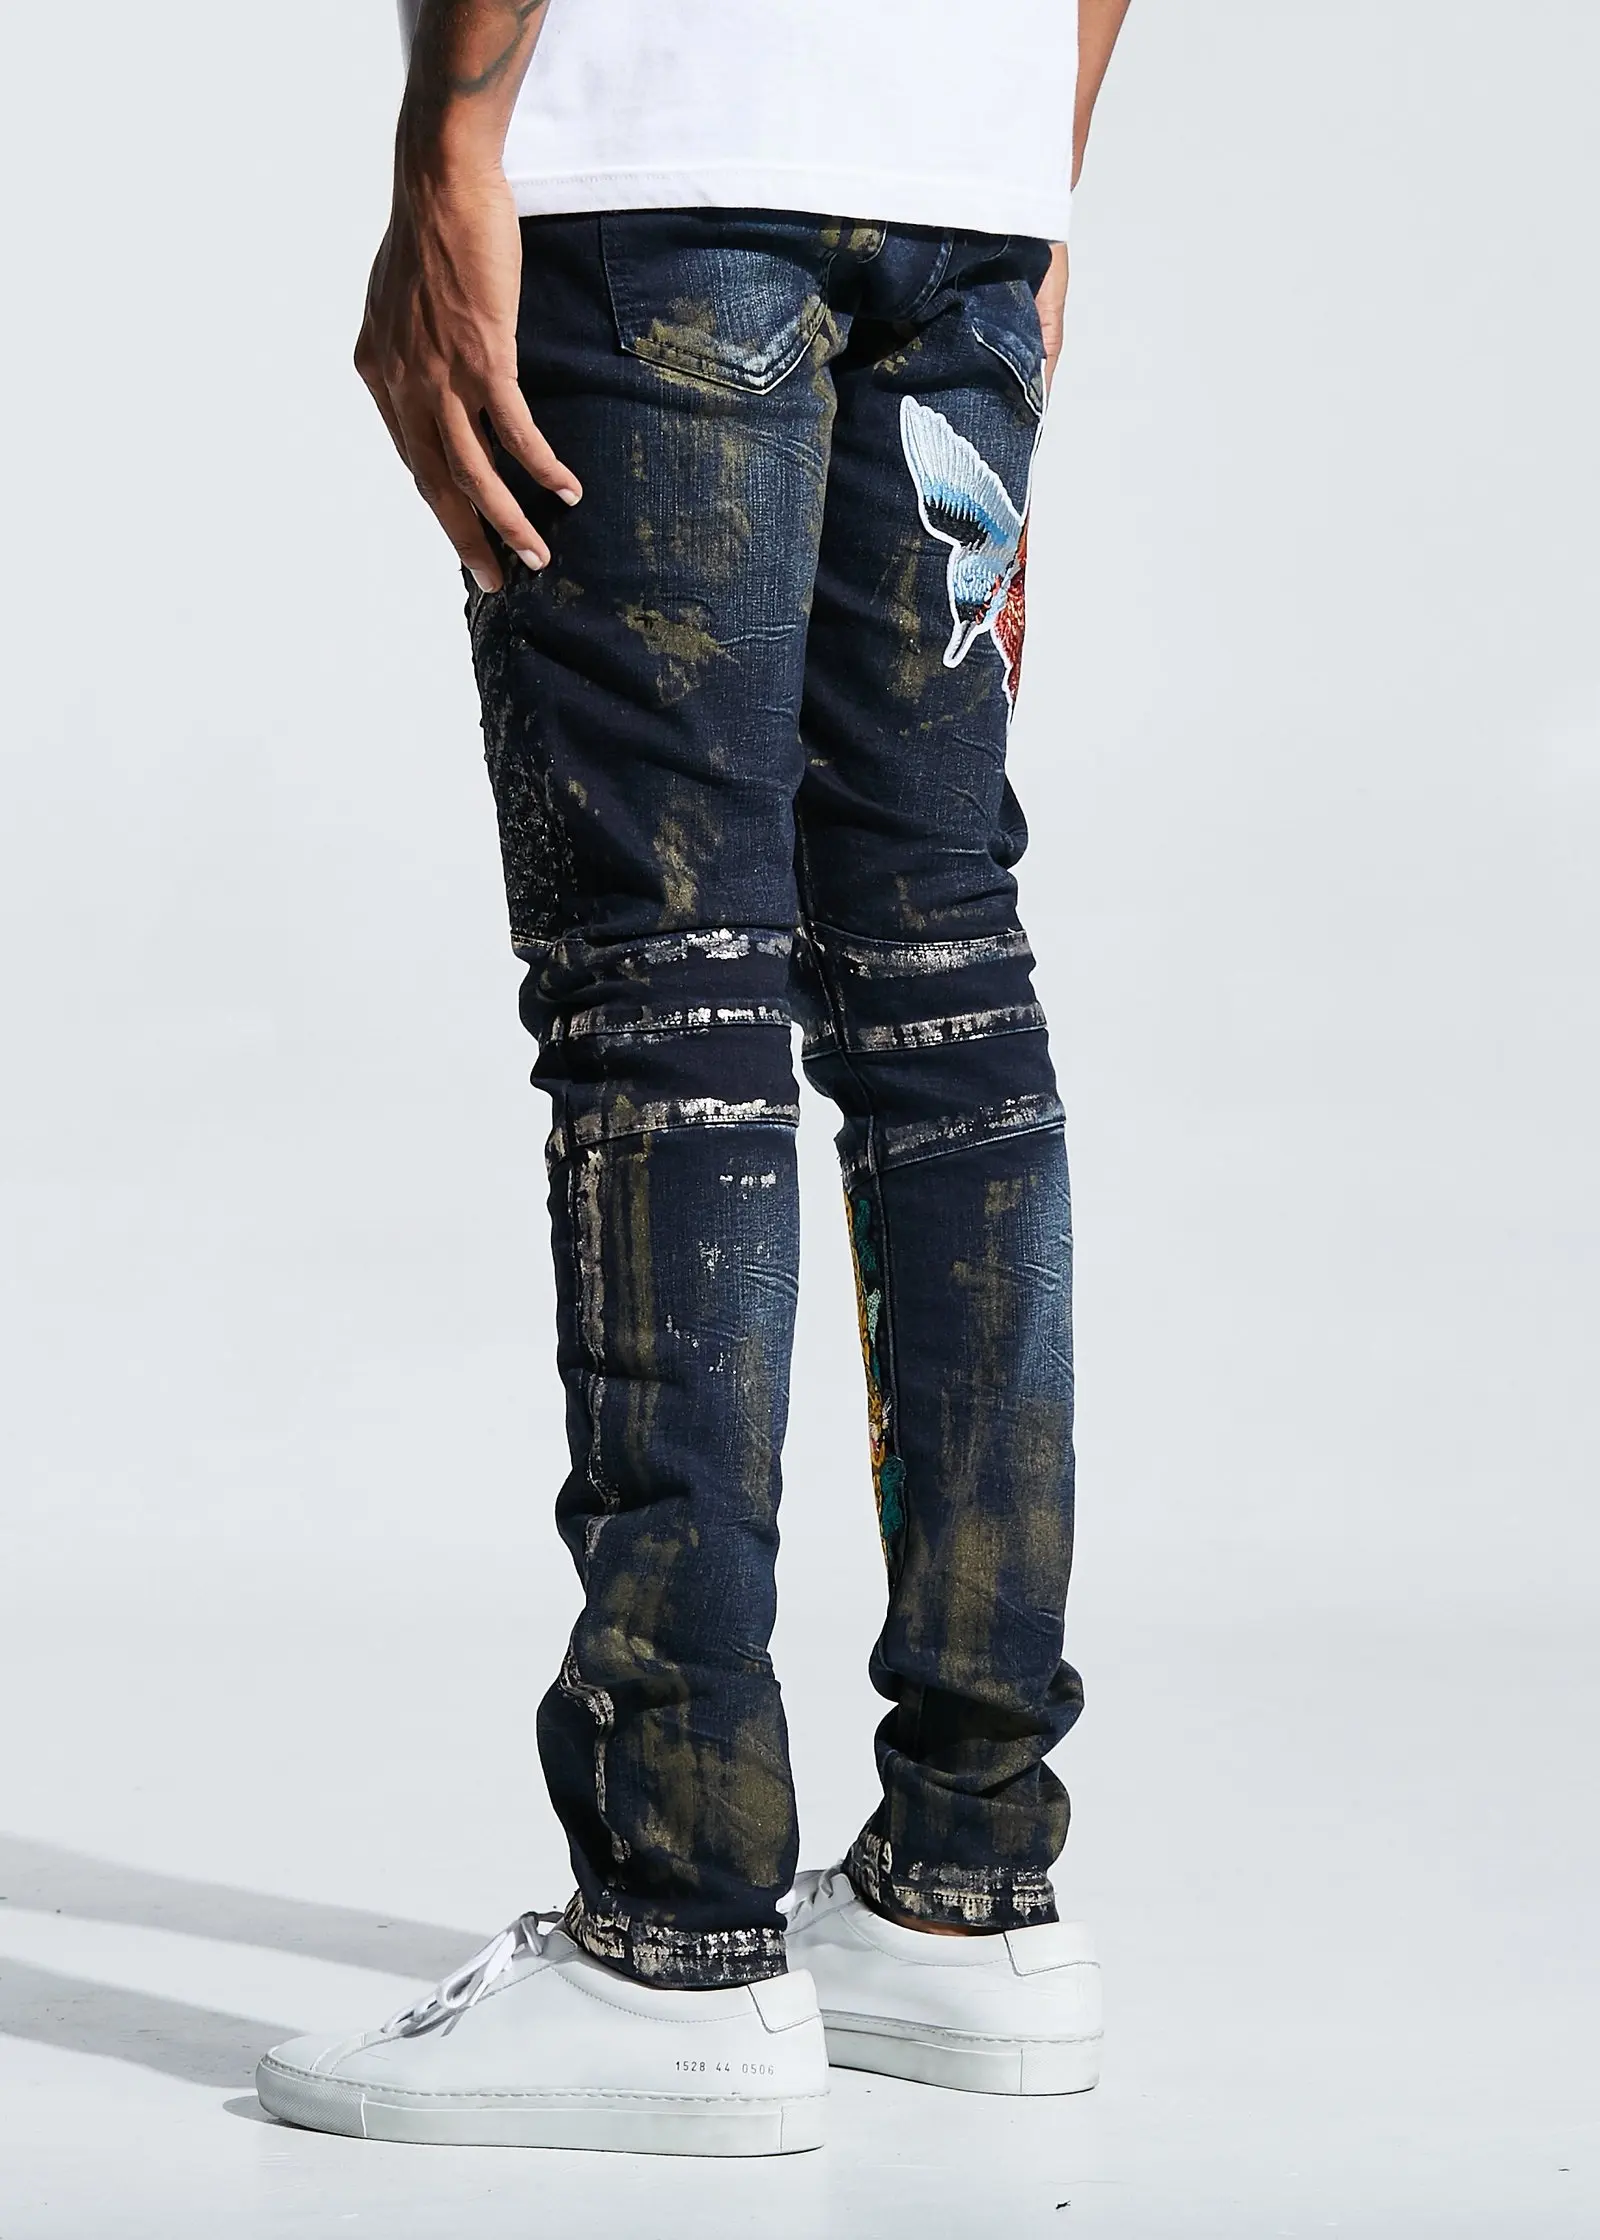 Oem Skinny Destroyed Crazy Jeans For Men Biker Jeans Floral Embroidery ...